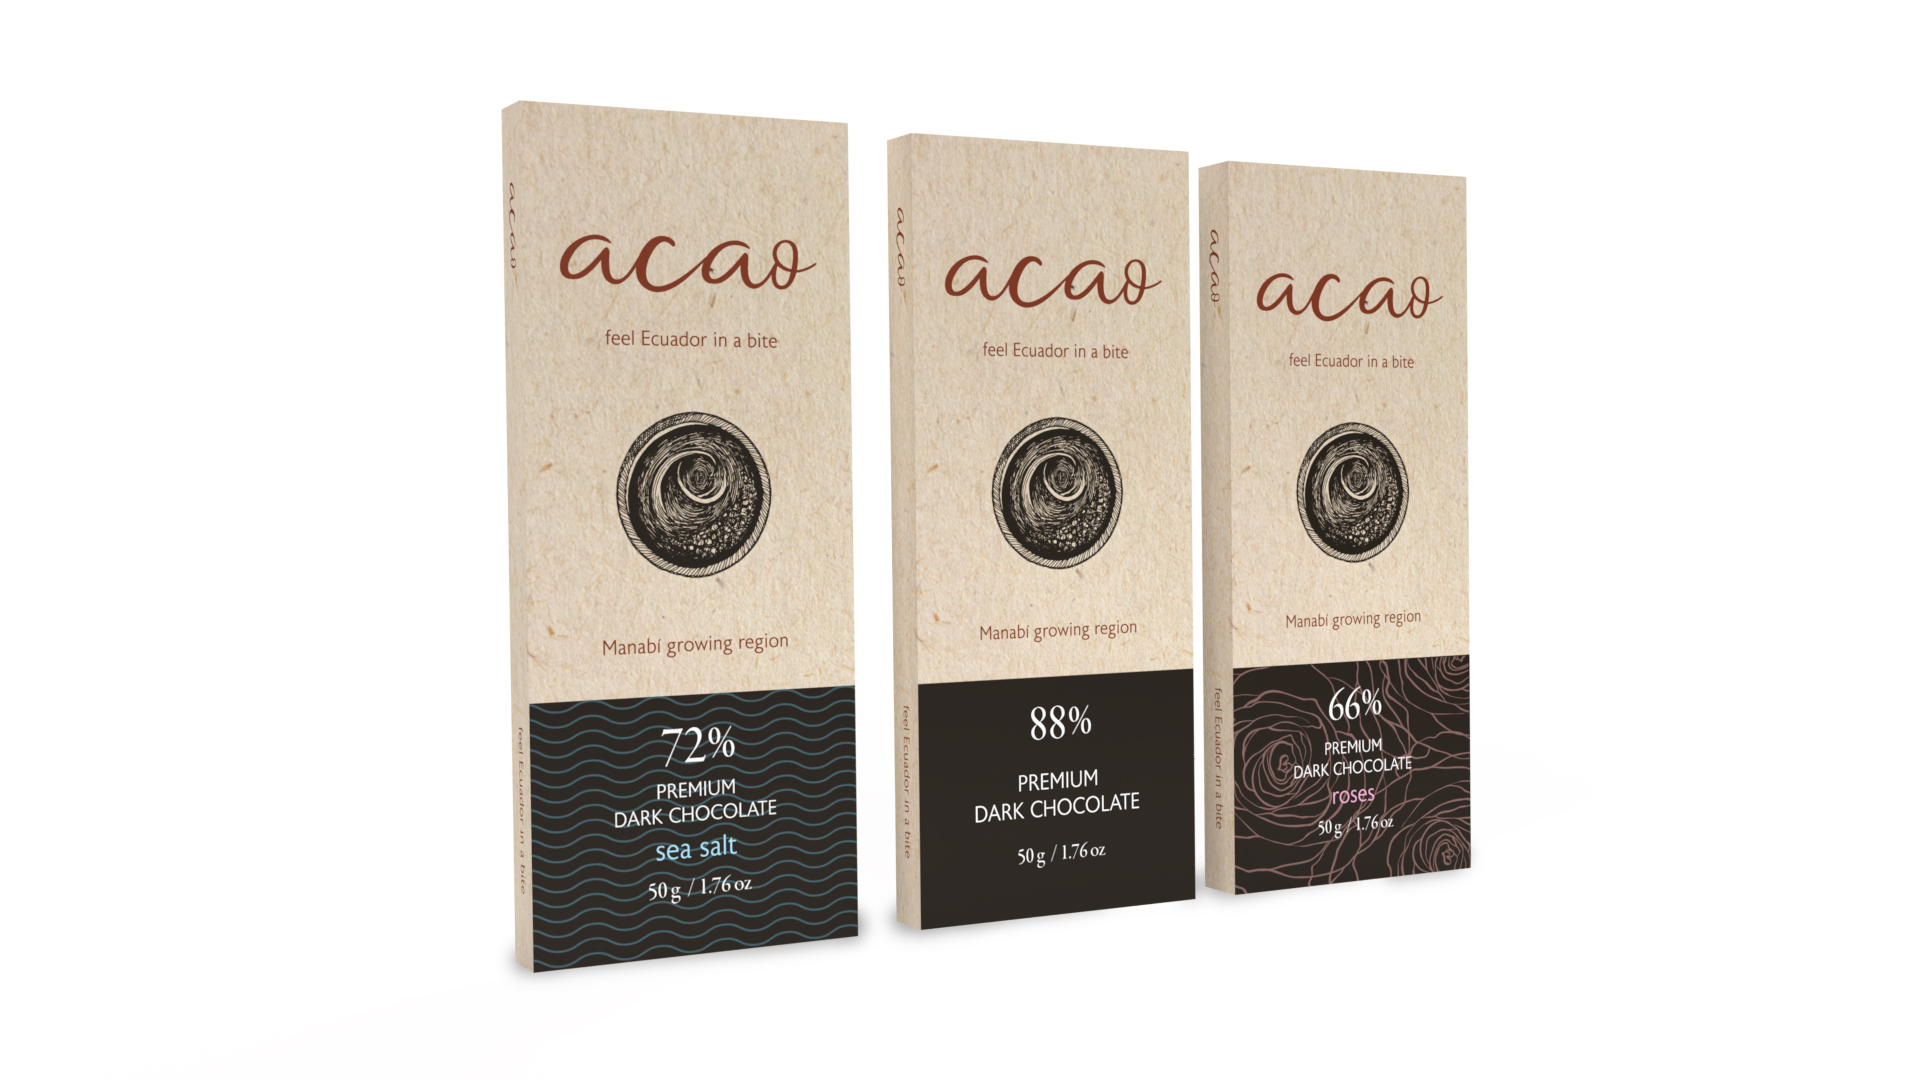 Brand design gráfica - Acao